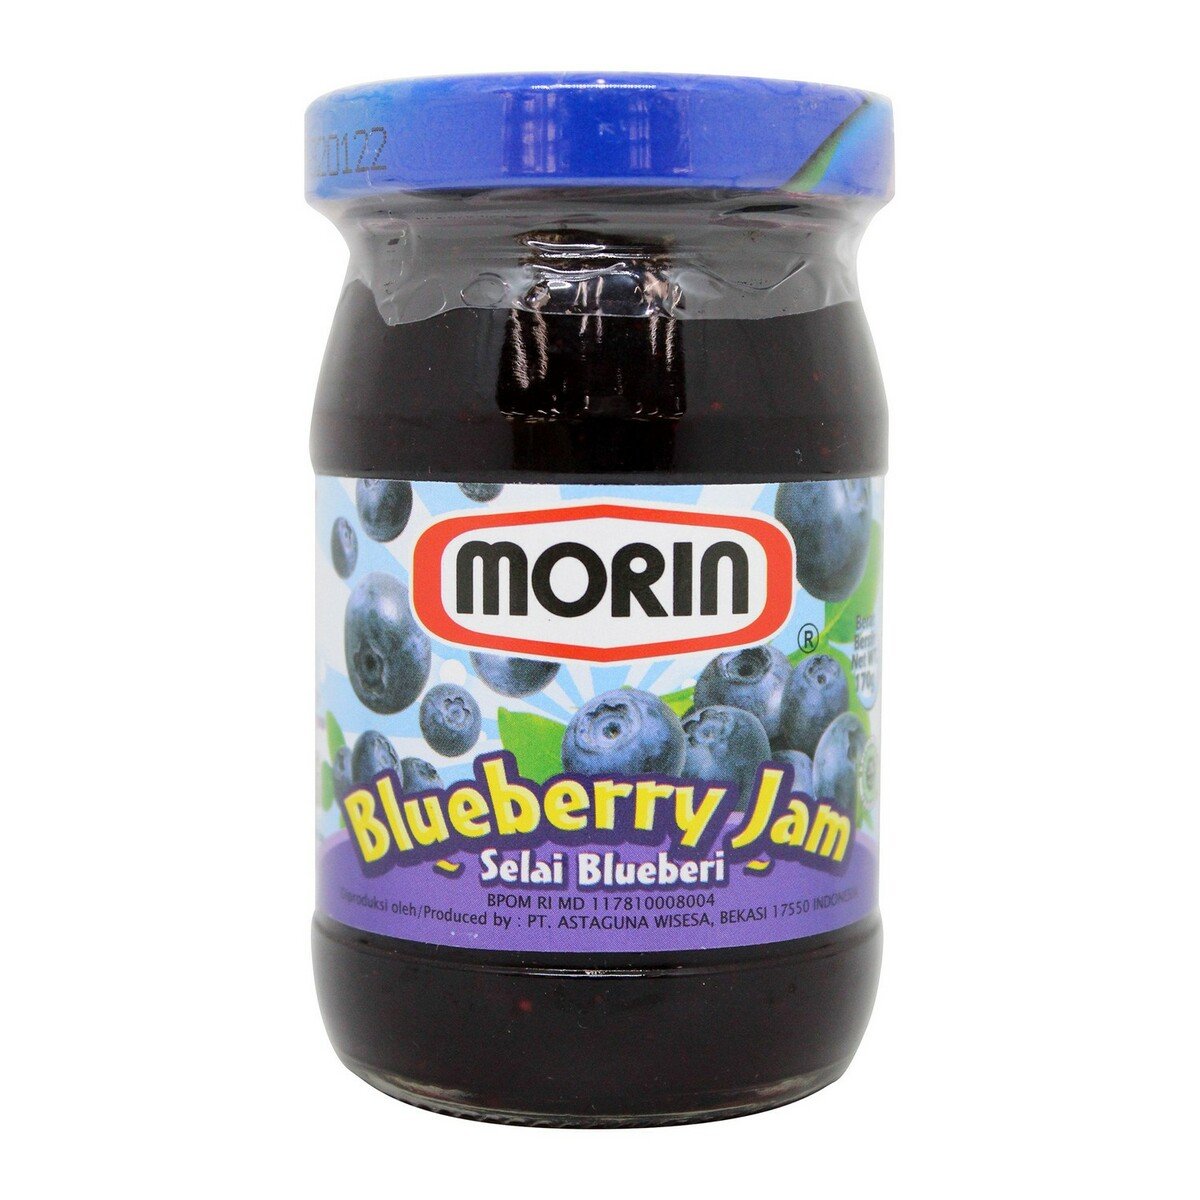 Morin Selai Blueberry 170g